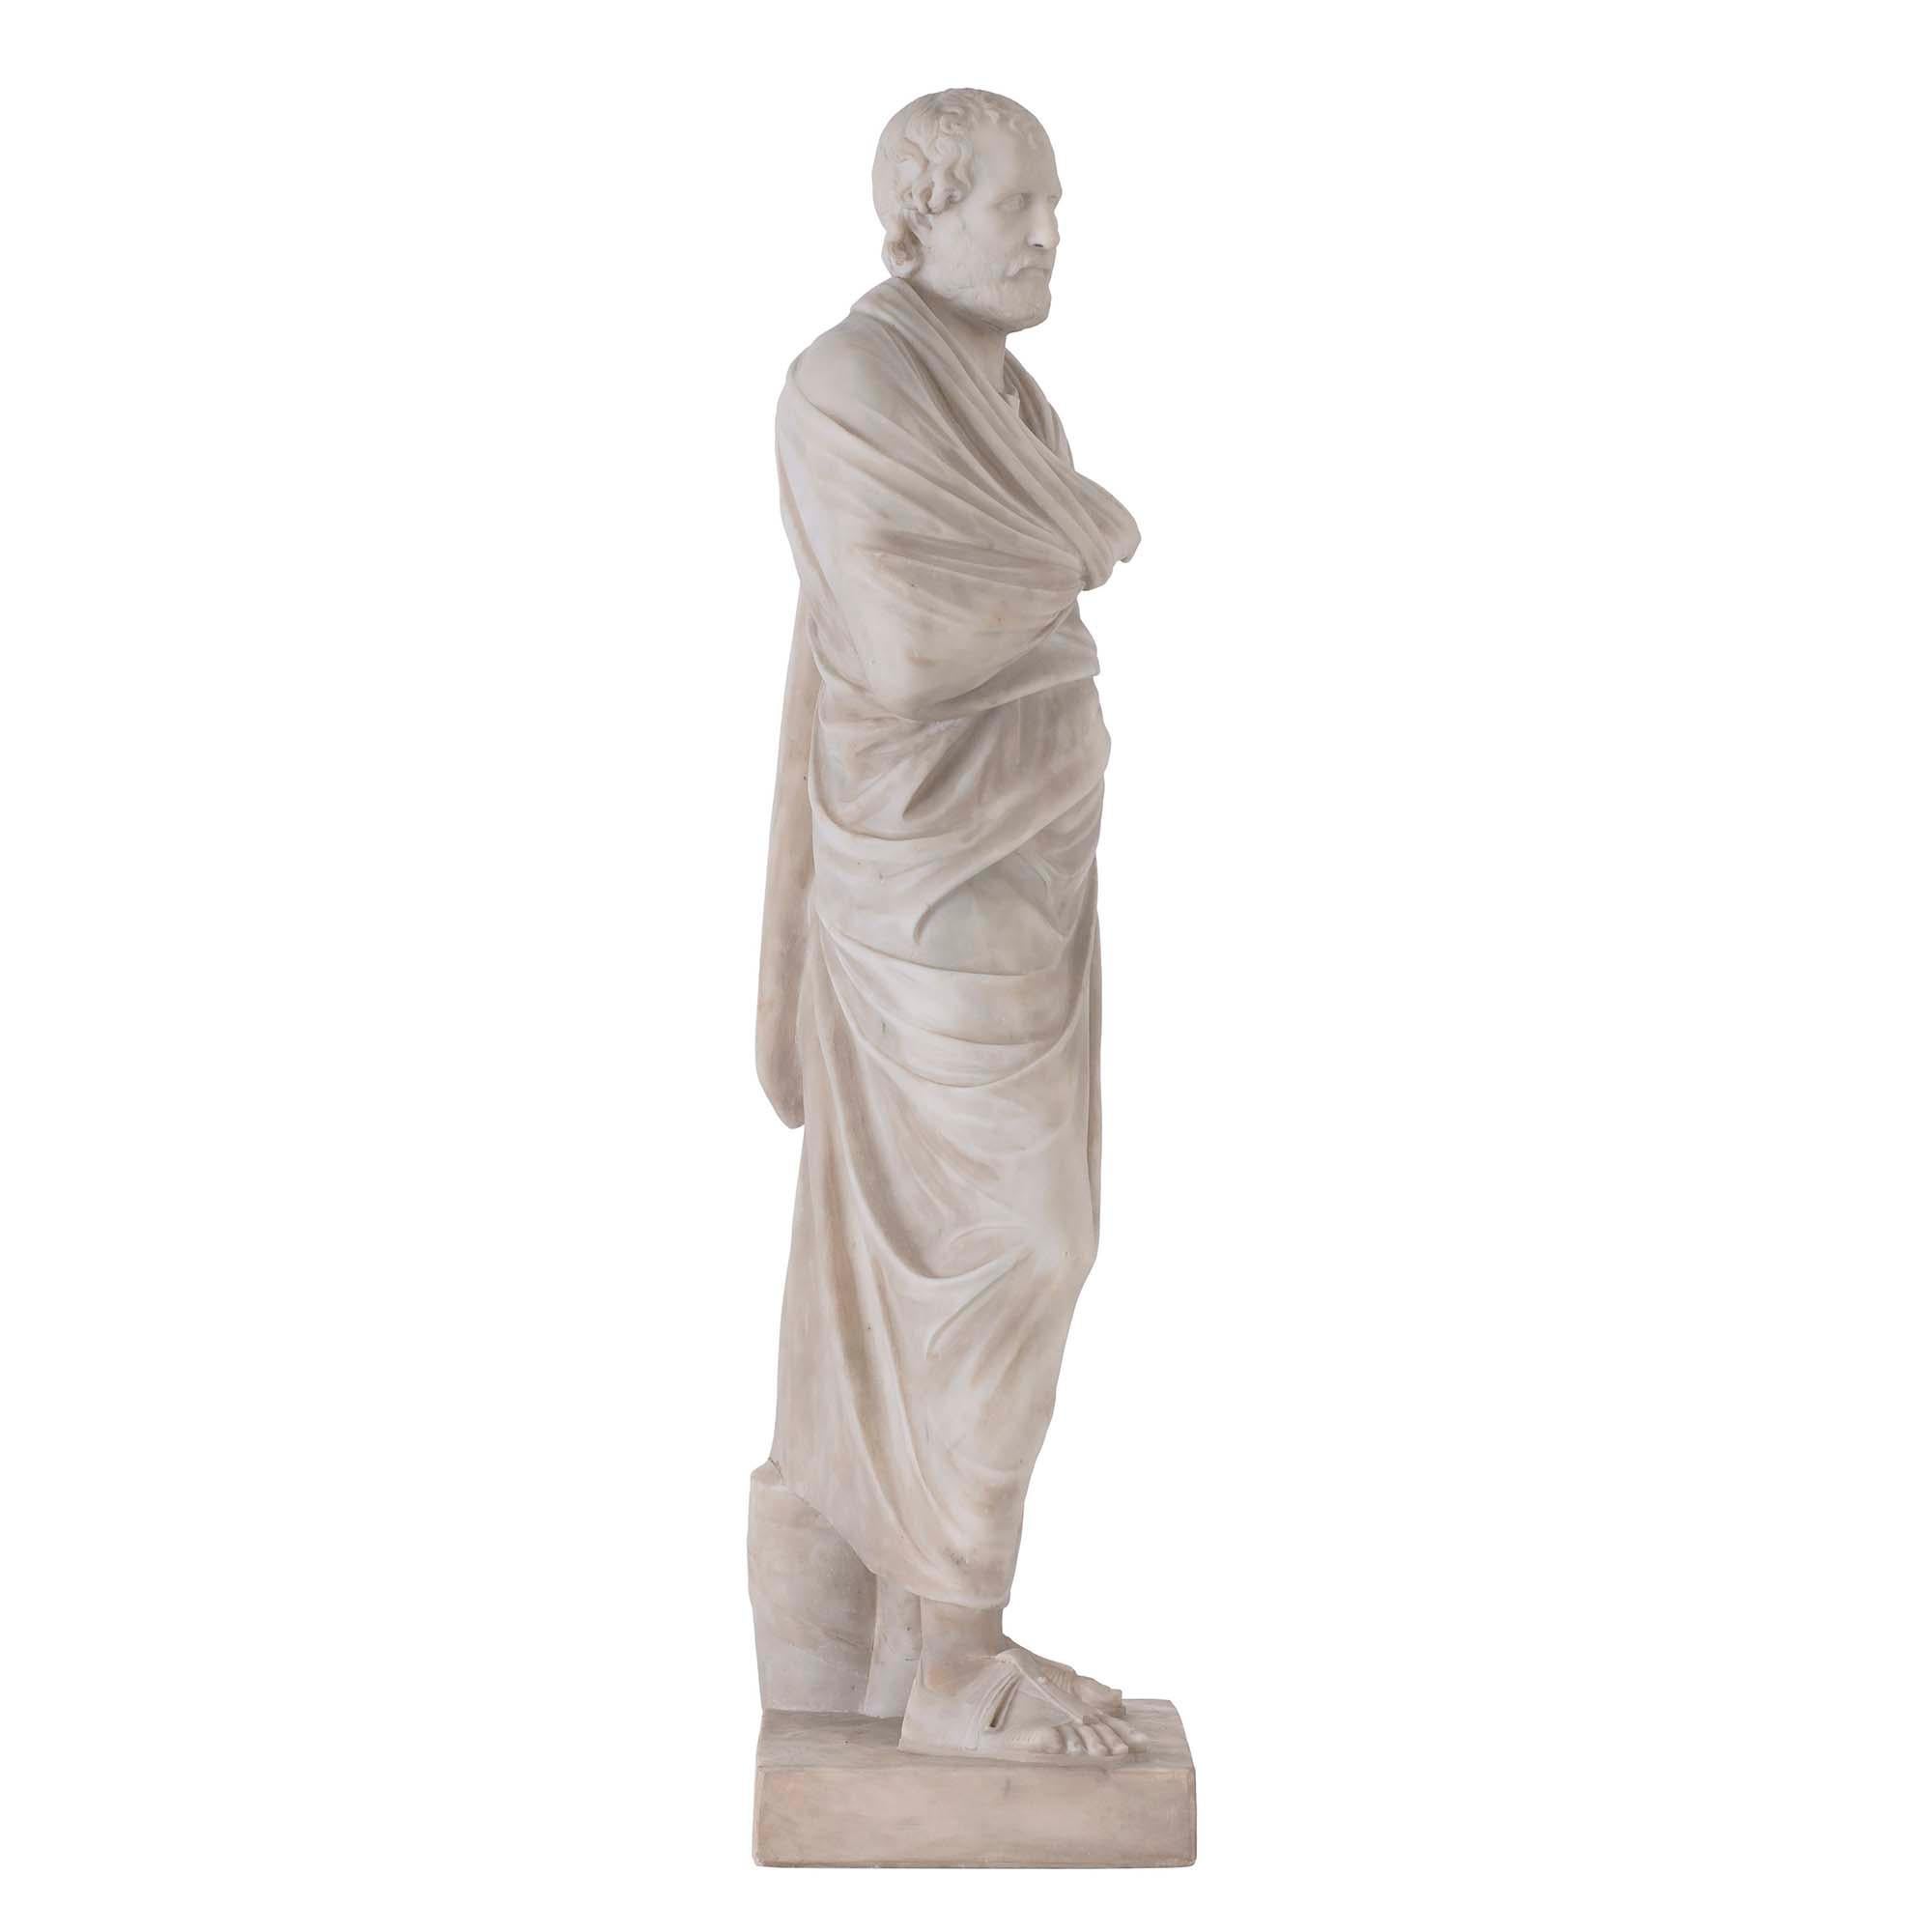 Belle statue italienne du début du XIXe siècle en marbre blanc de Carrare représentant Eschines. La sculpture repose sur une base rectangulaire. Le philosophe porte des vêtements drapés et des chaussures classiques. Extrêmement bien exécuté, avec